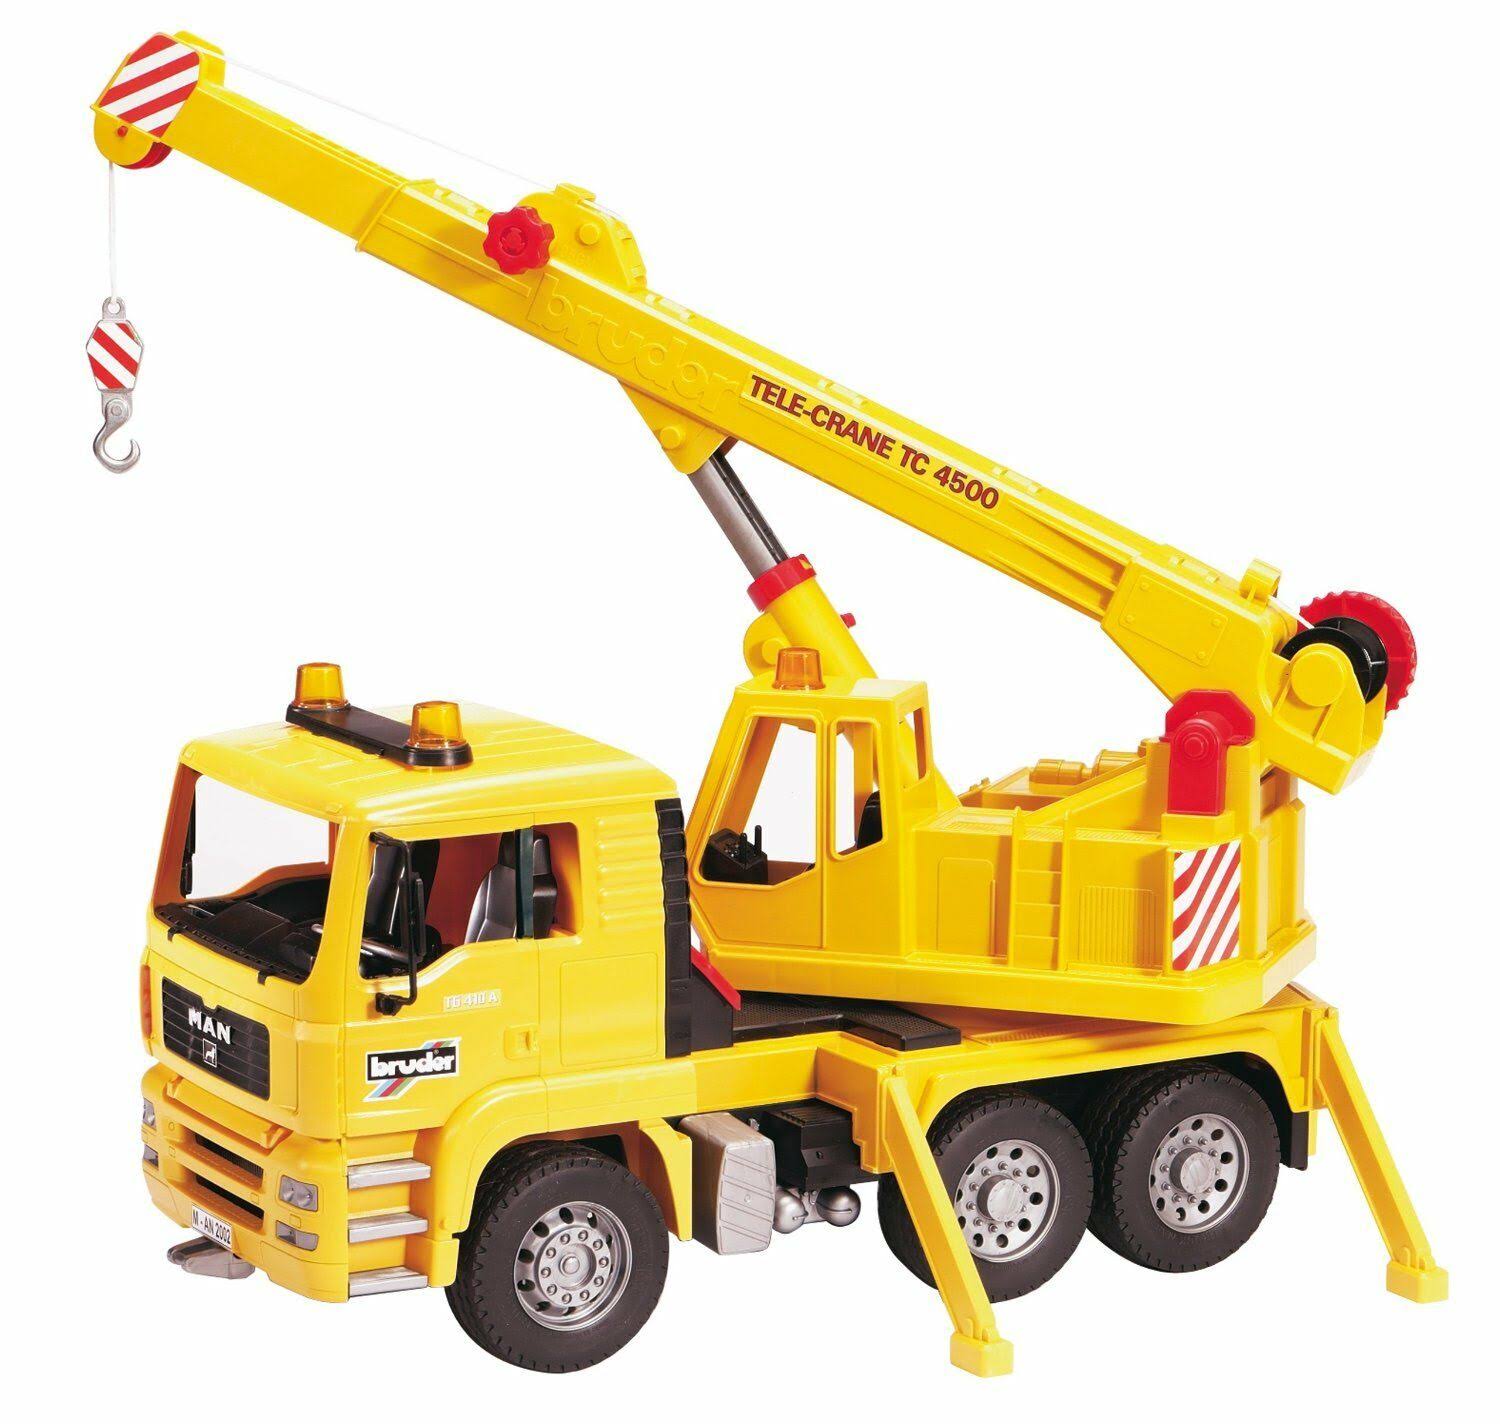 Bruder Mobile Crane Truck Toy